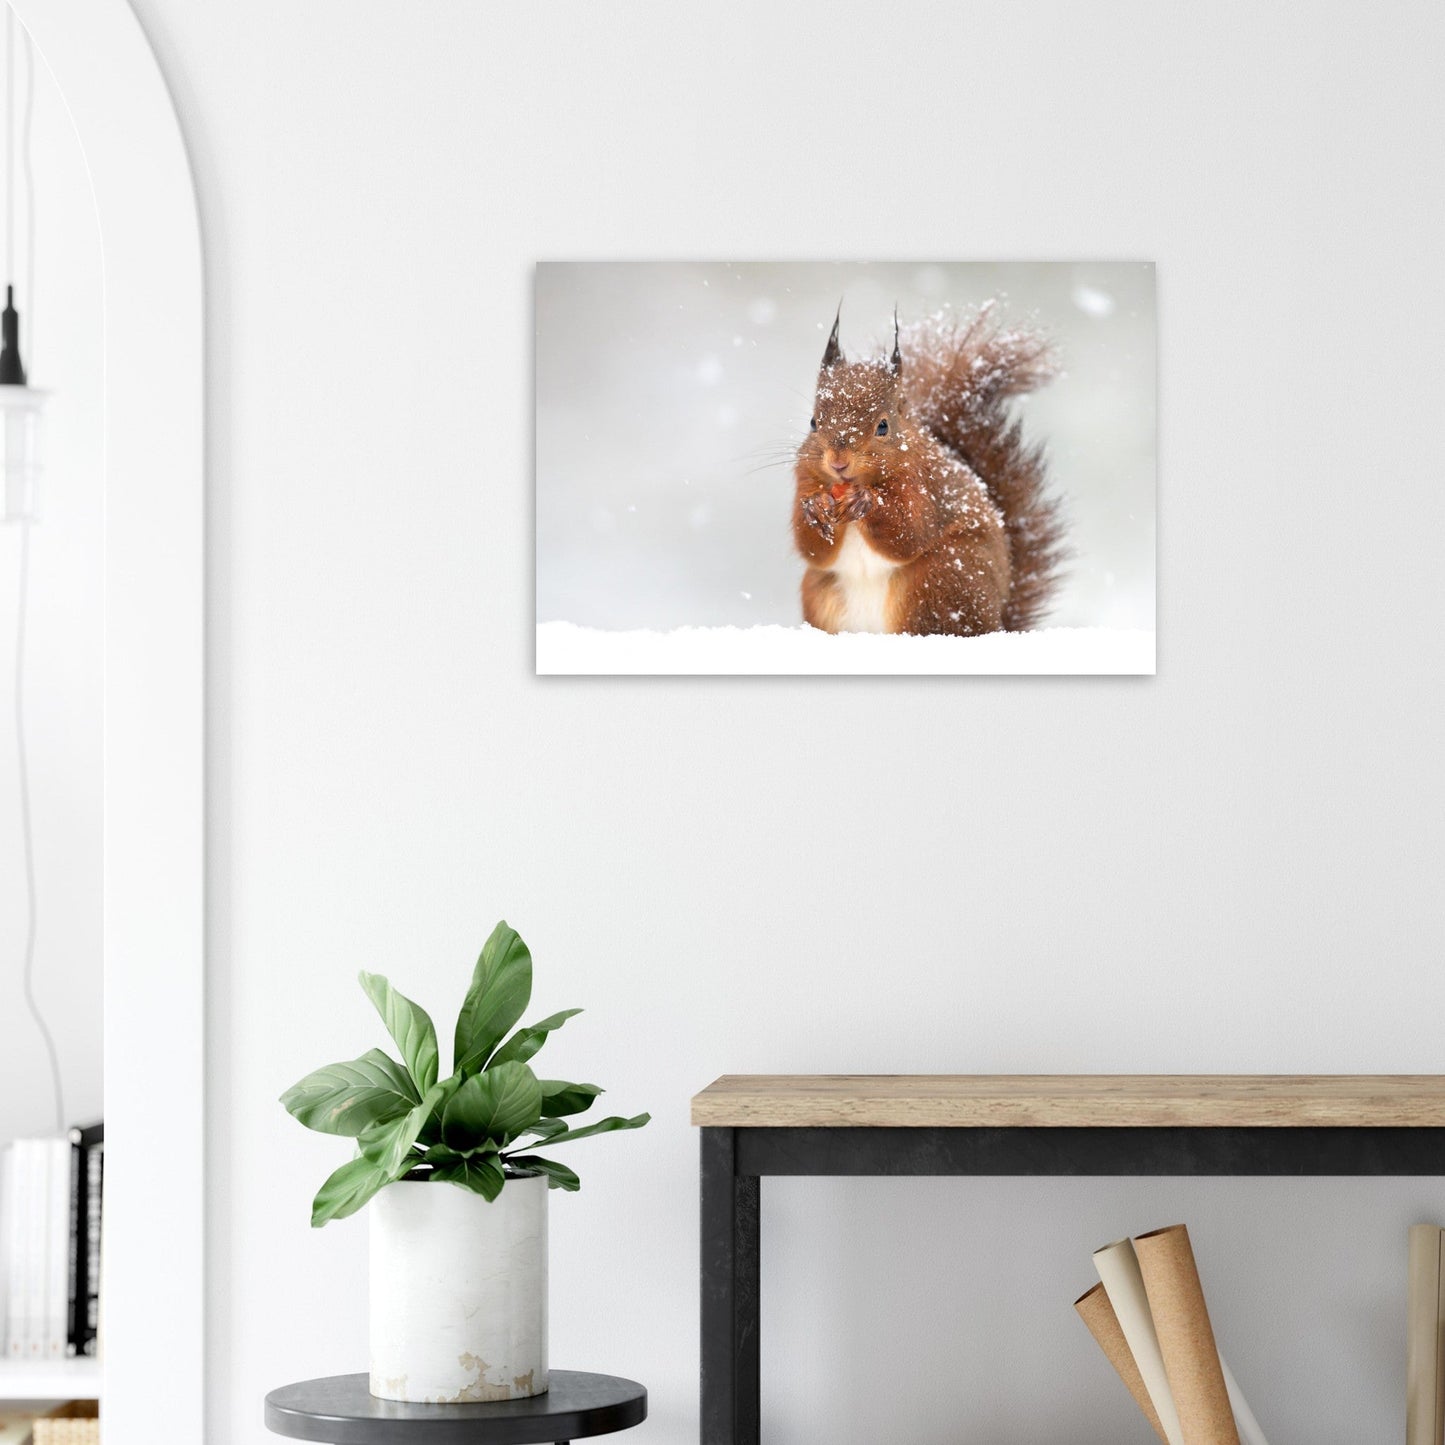 Vente Photo d'un écureuil dans la neige #1 - Tableau photo paysage